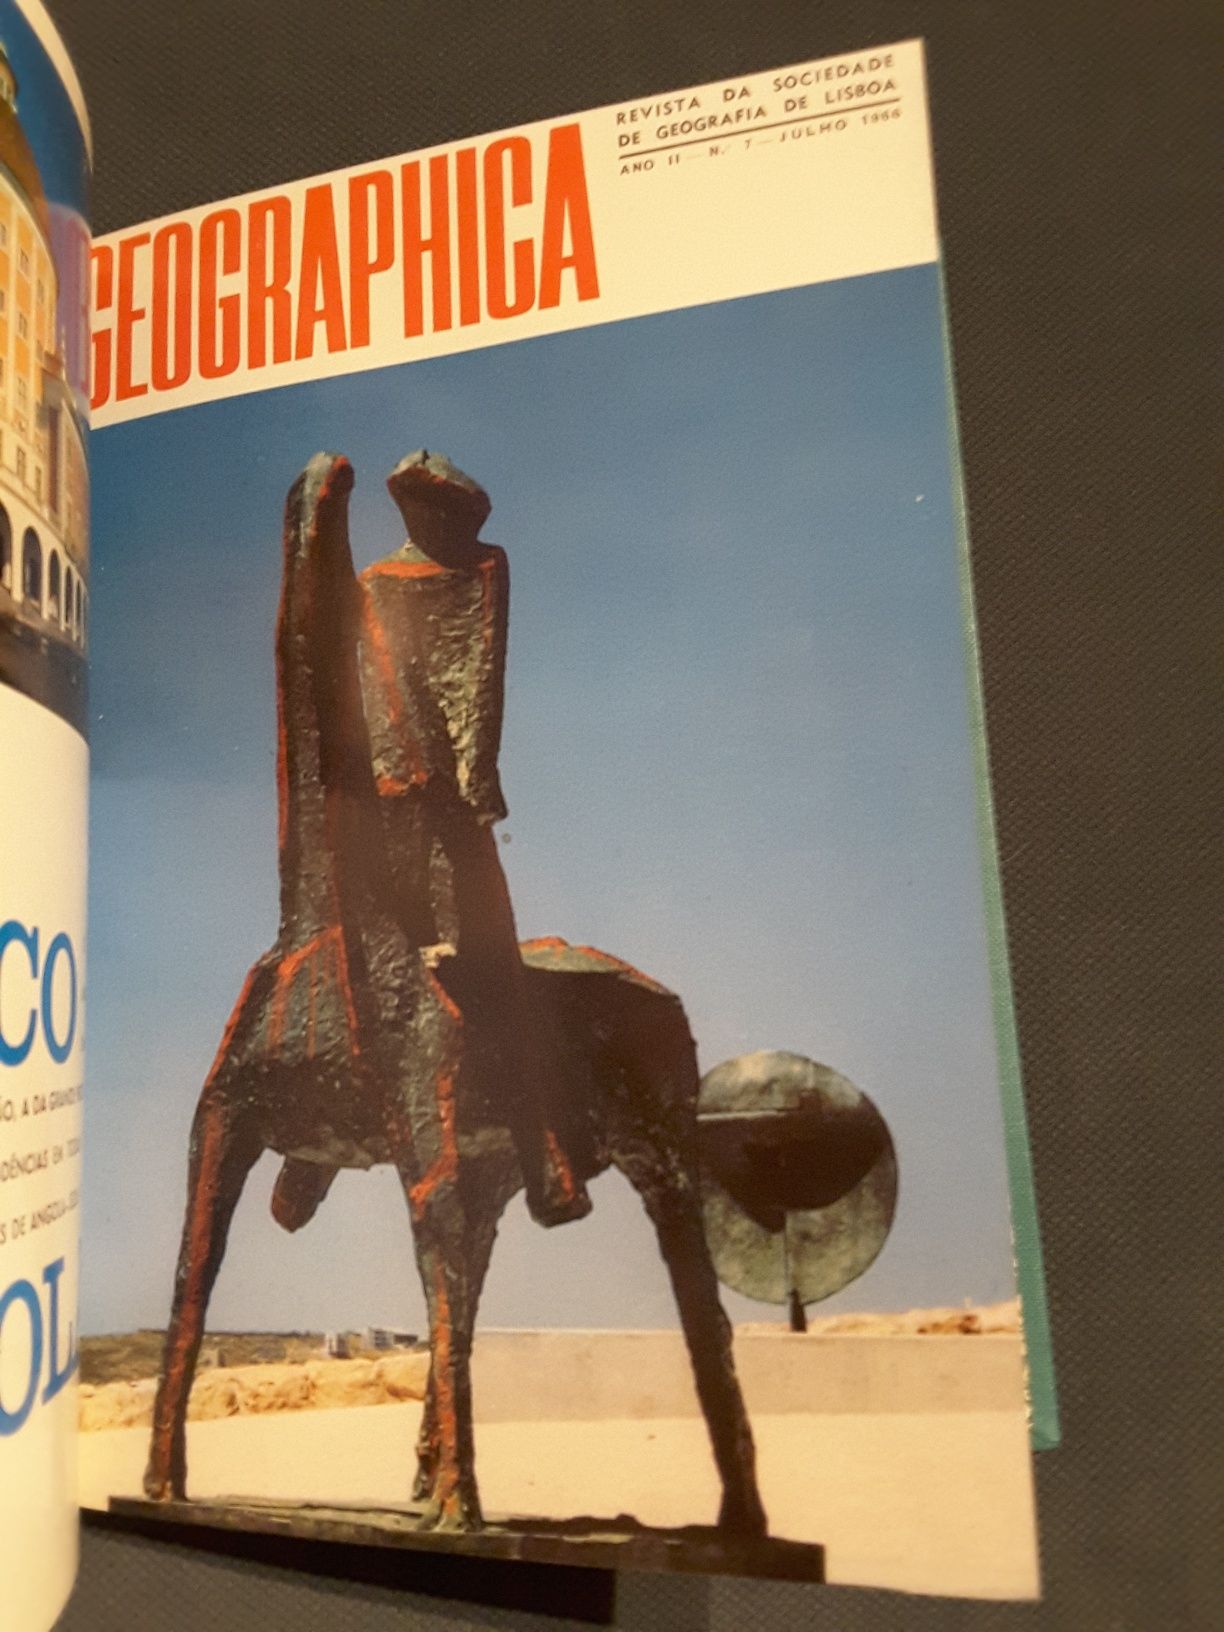 Geographica 1966 (Moçambique-Angola-Castelo Novo-Serpa Pinto-Almeirim)